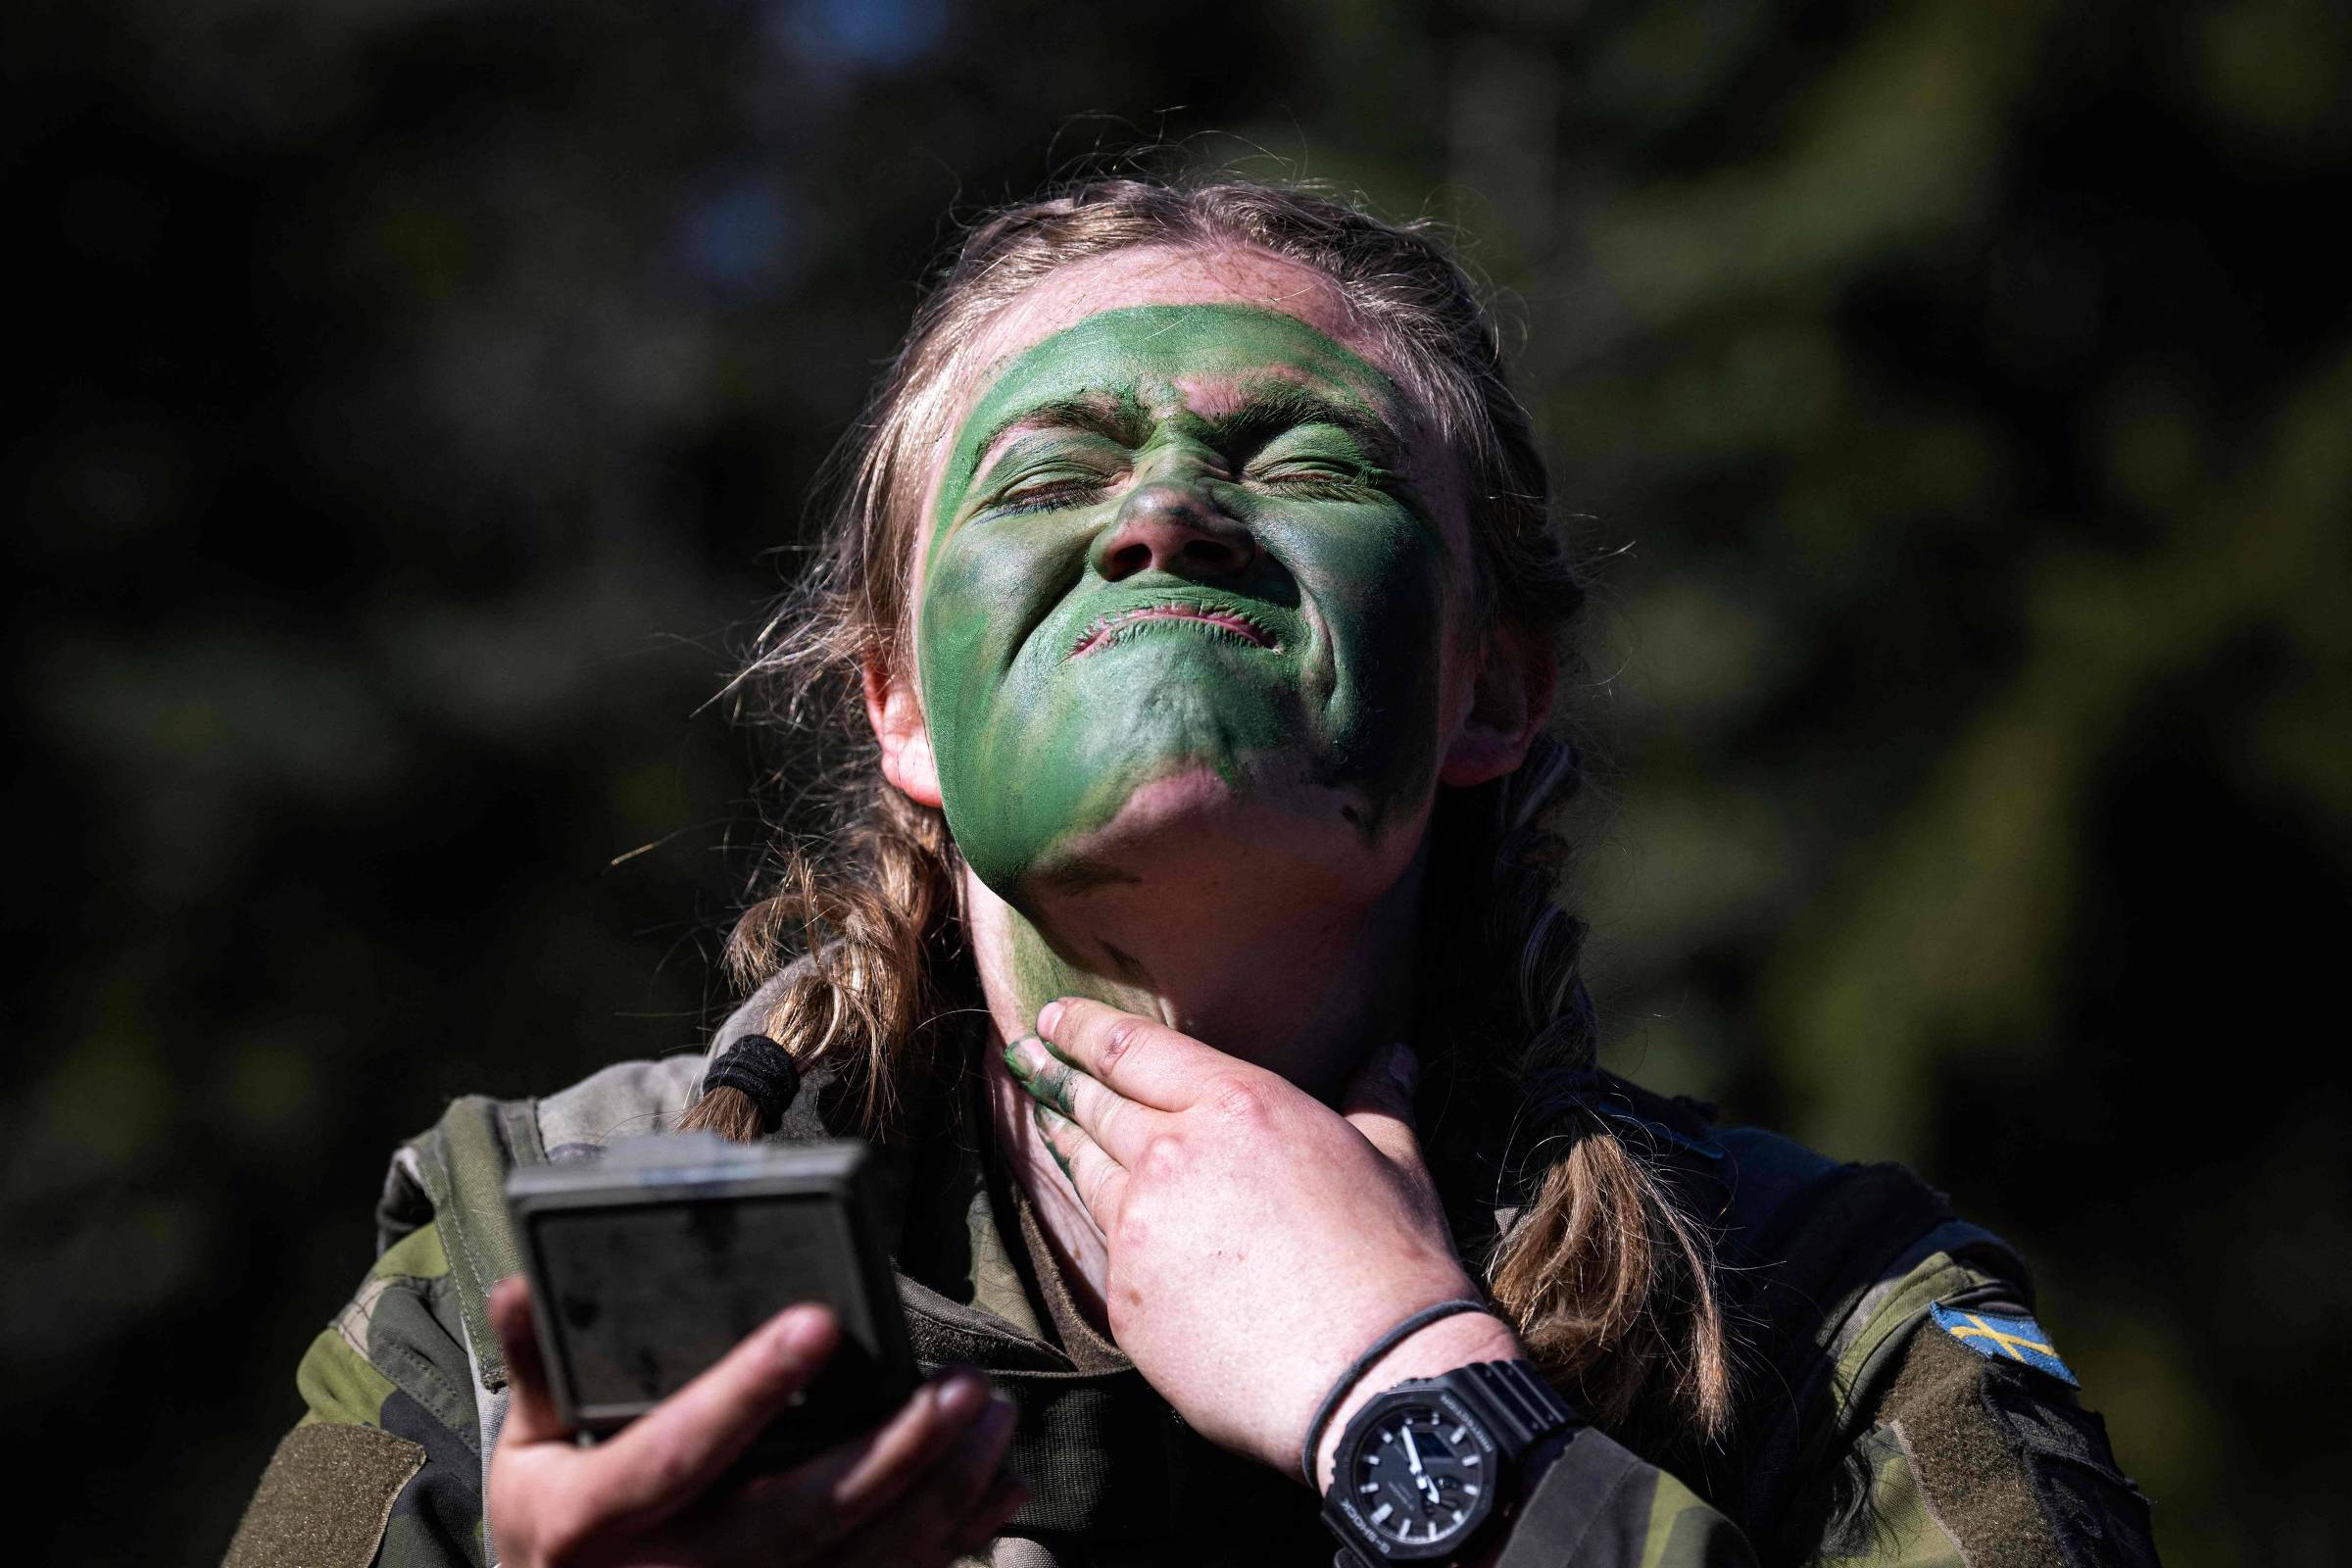 Inteligência militar sueca diz que ameaça russa tem aumentado